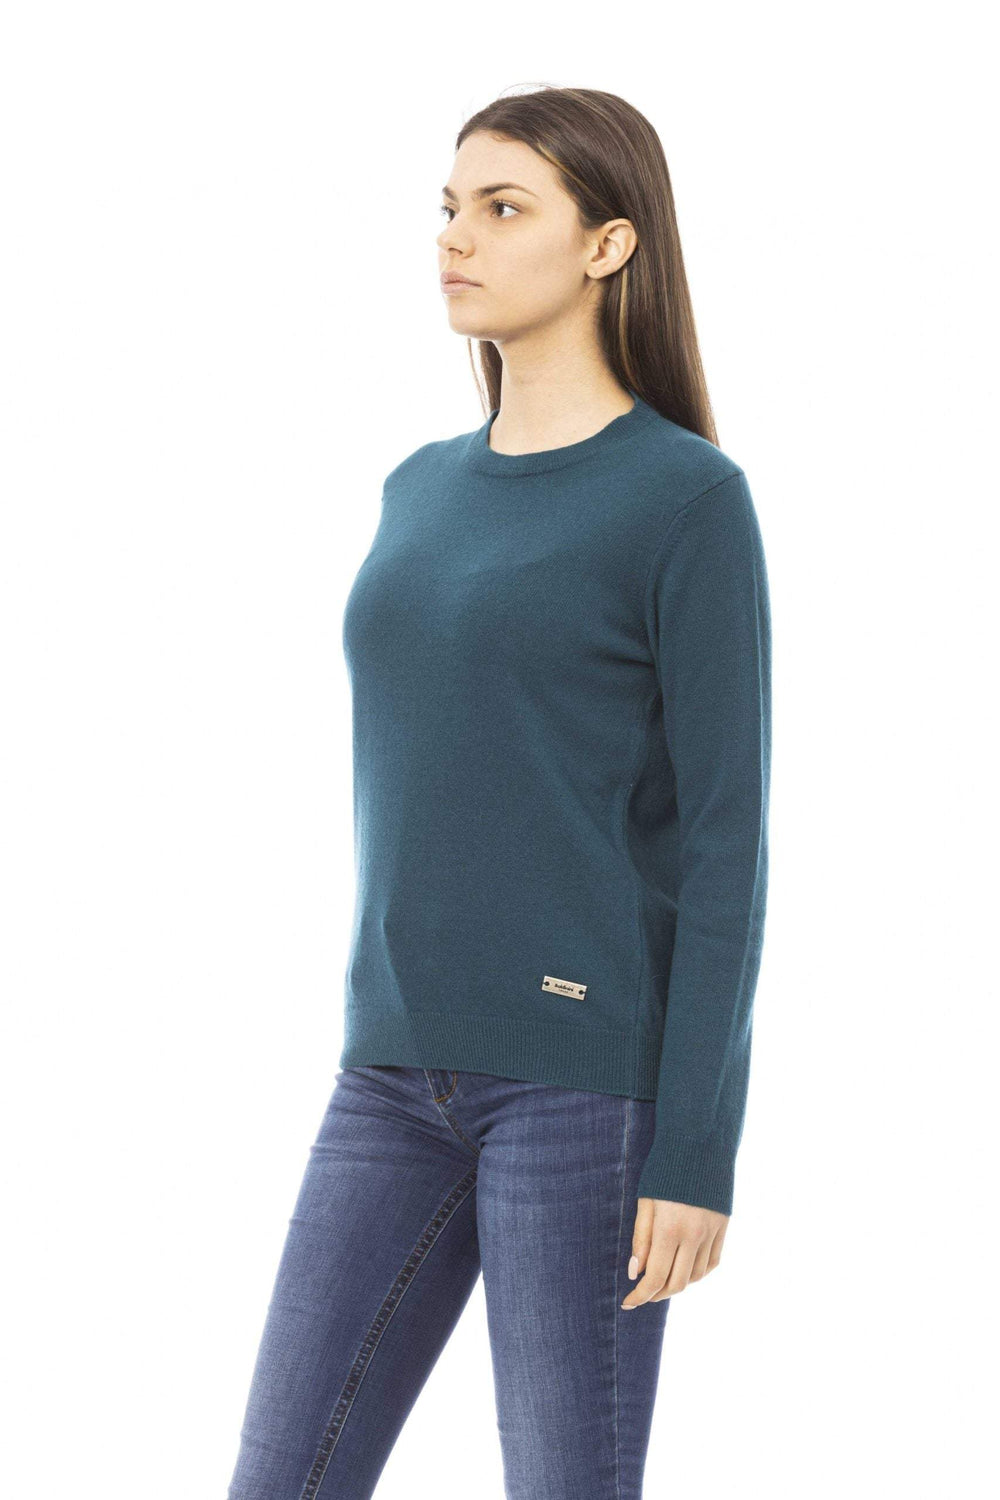 Baldinini Trend Teal Wool Sweater Baldinini Trend, feed-1, M, S, Sweaters - Women - Clothing, Teal at SEYMAYKA